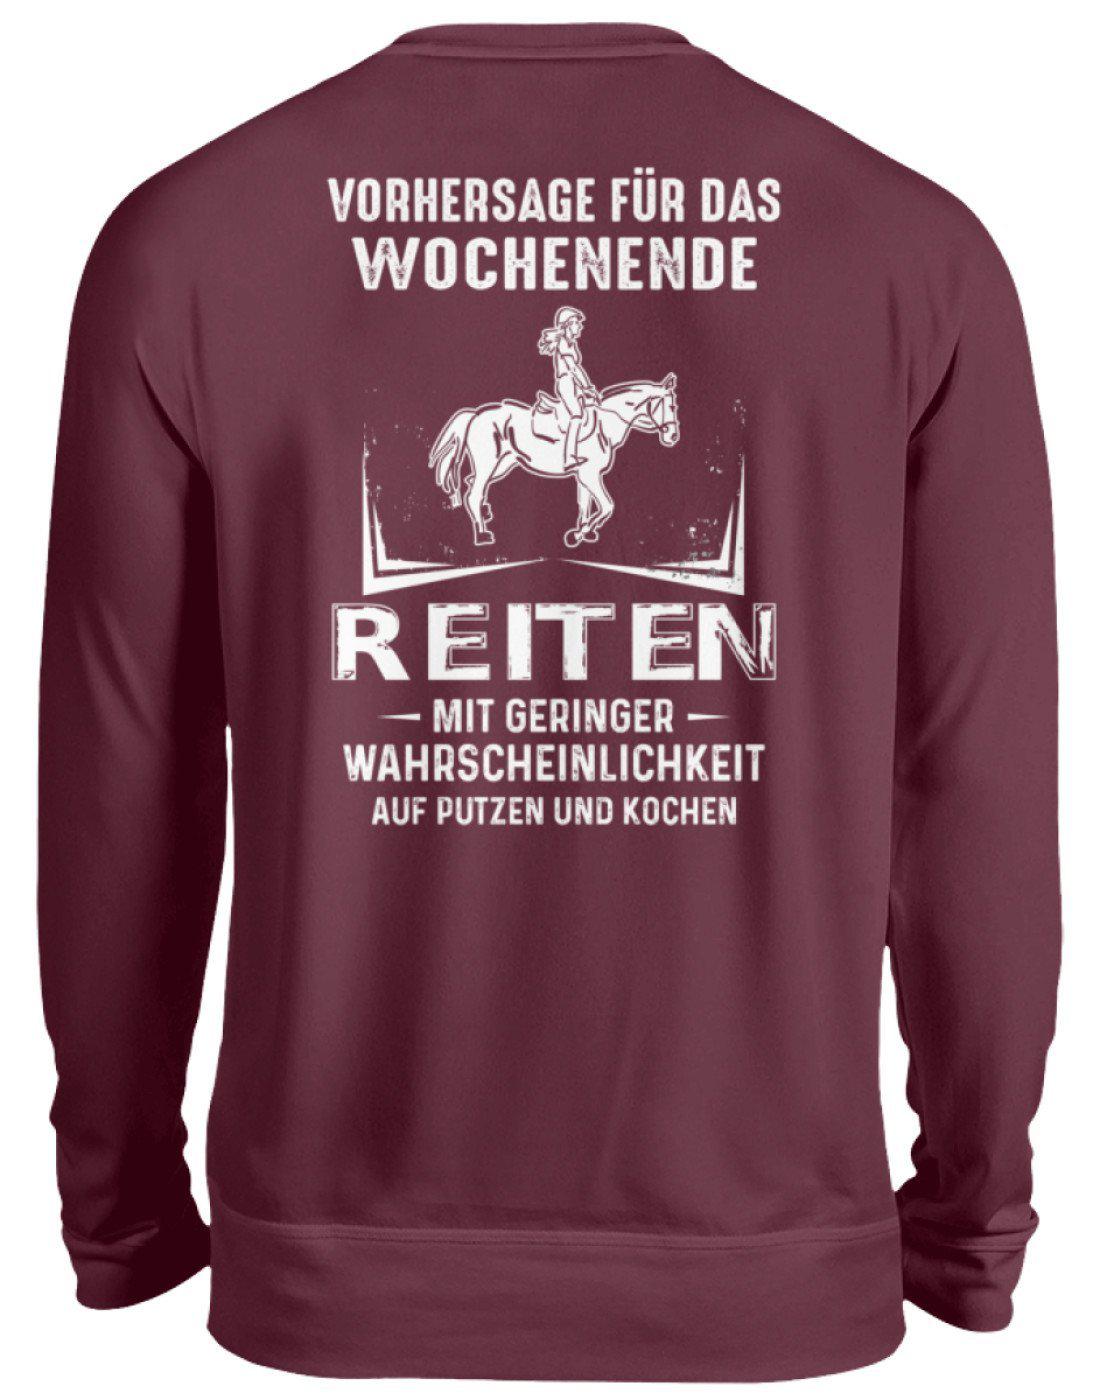 Reiten Vorhersage (Rückenprint) · Unisex Sweatshirt Pullover-Unisex Sweatshirt-Burgundy-S-Agrarstarz